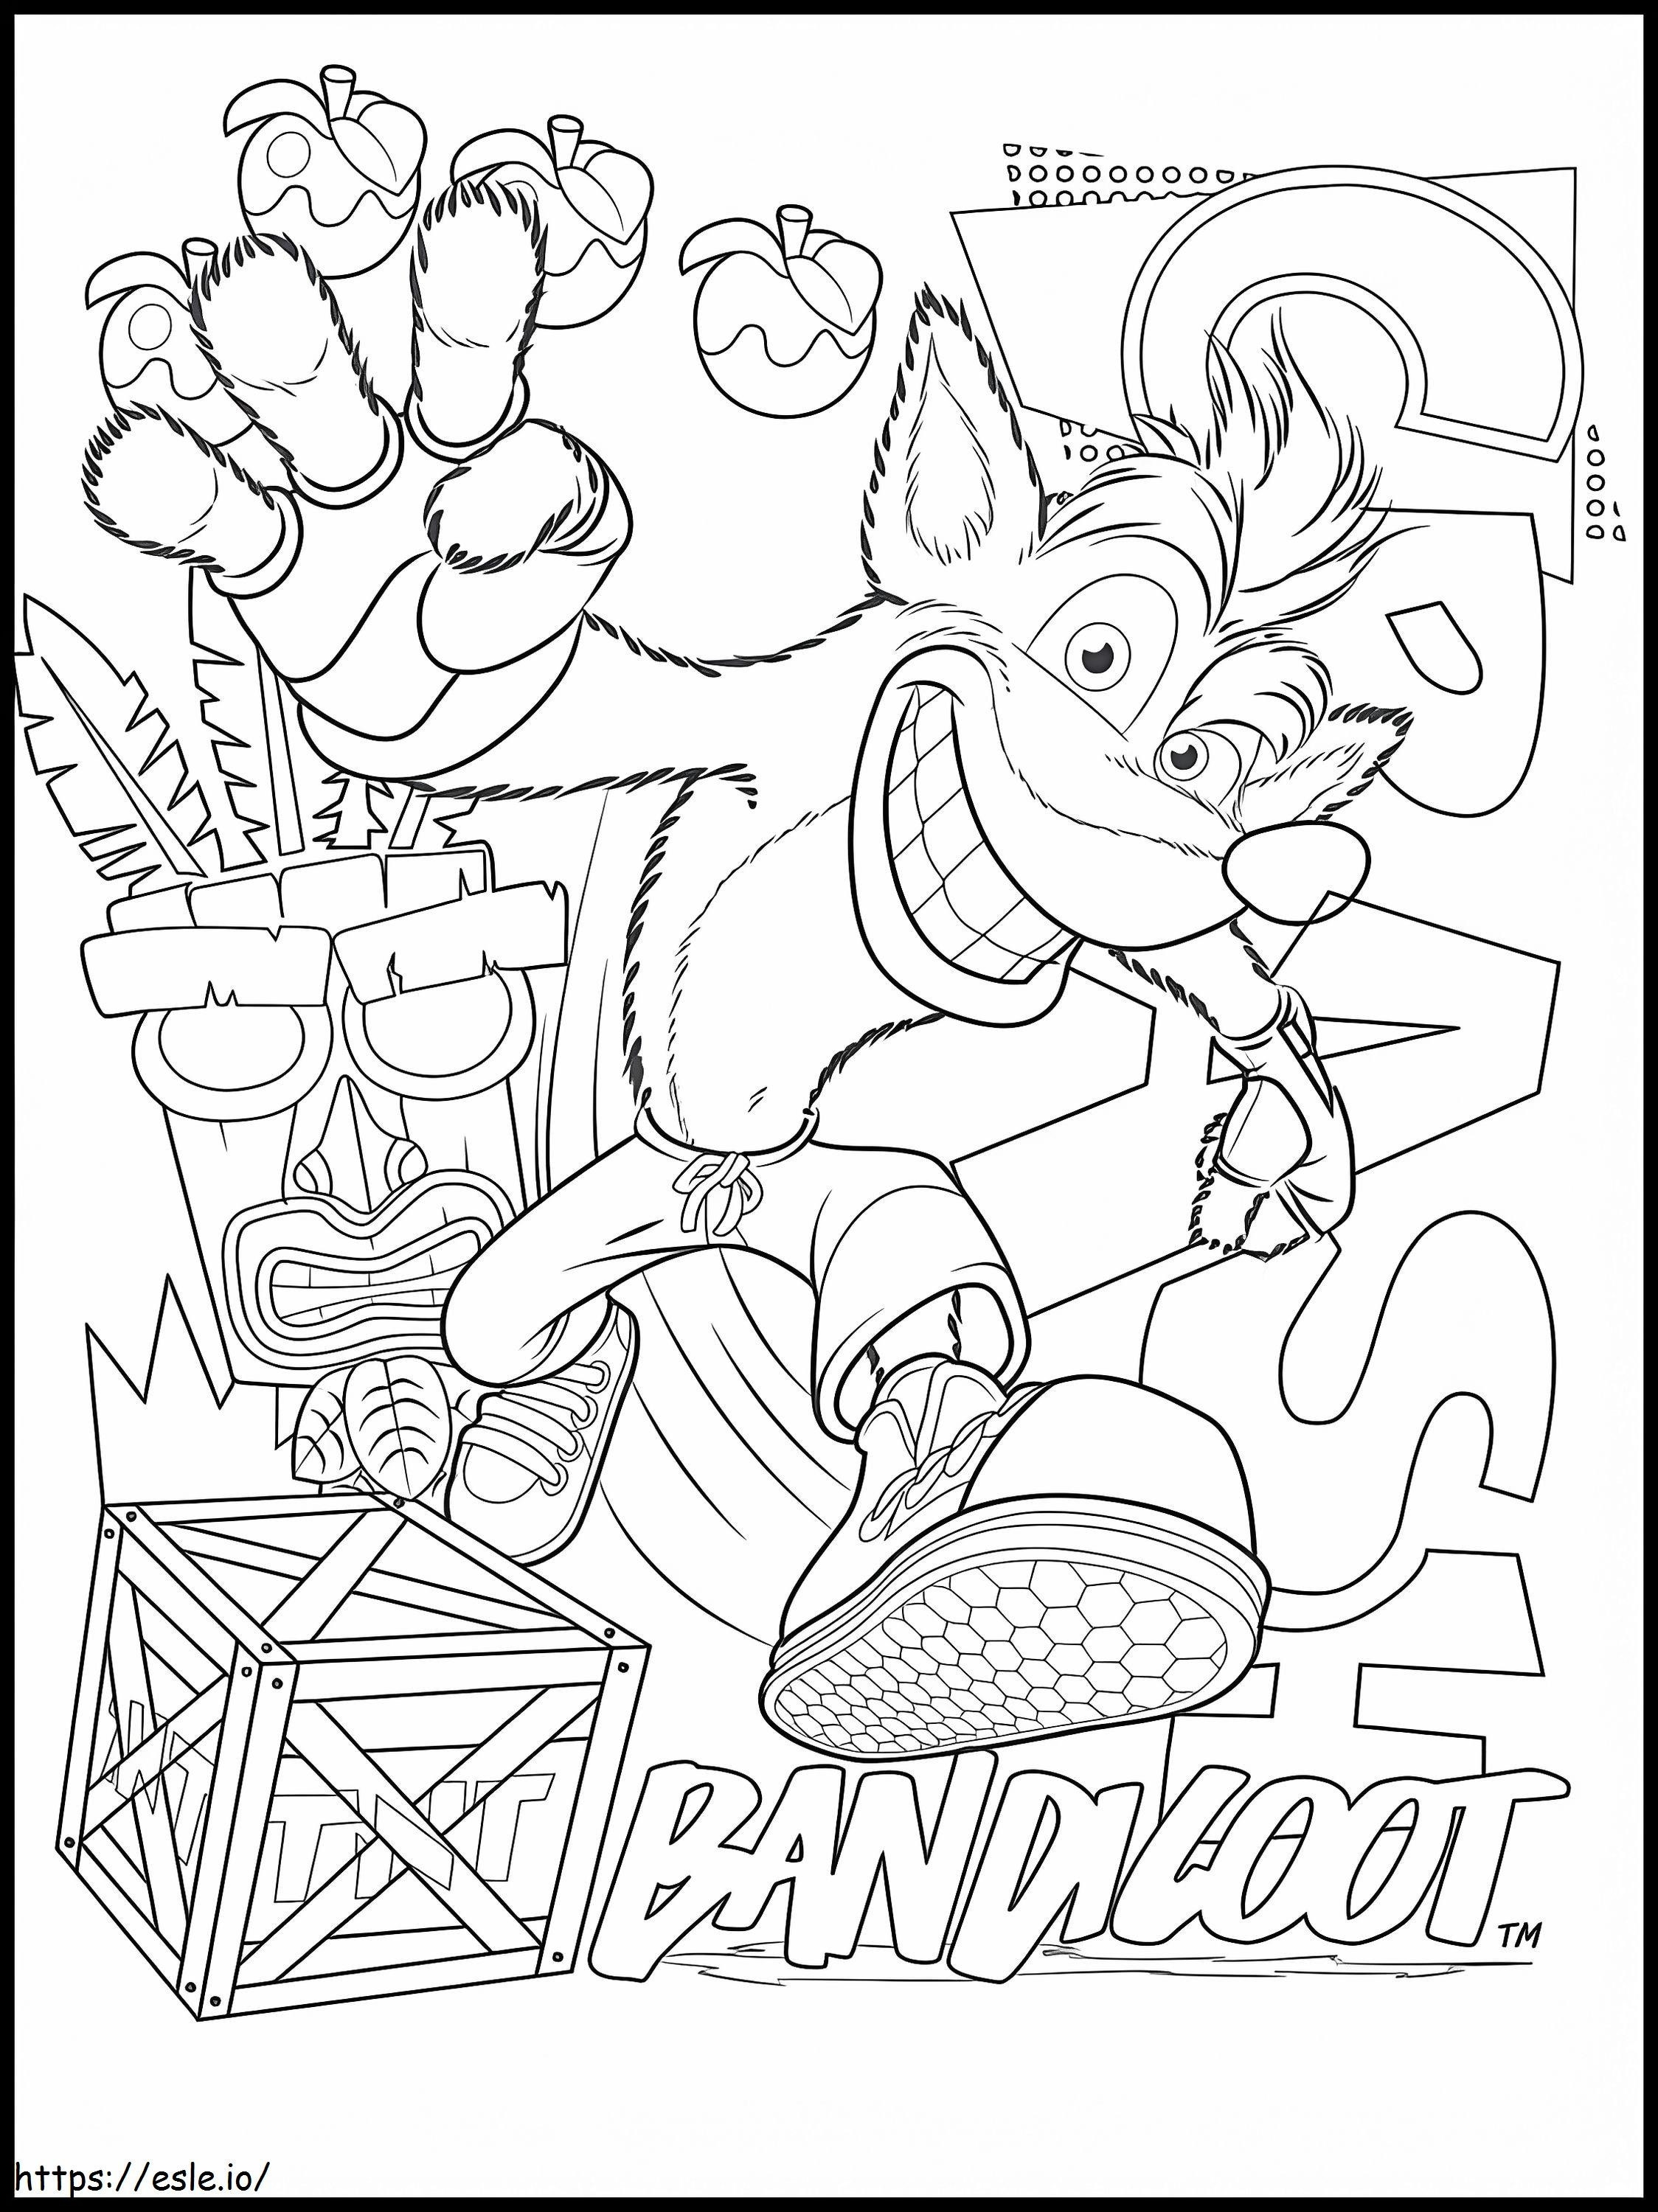 Crash Bandicoot 4 da colorare